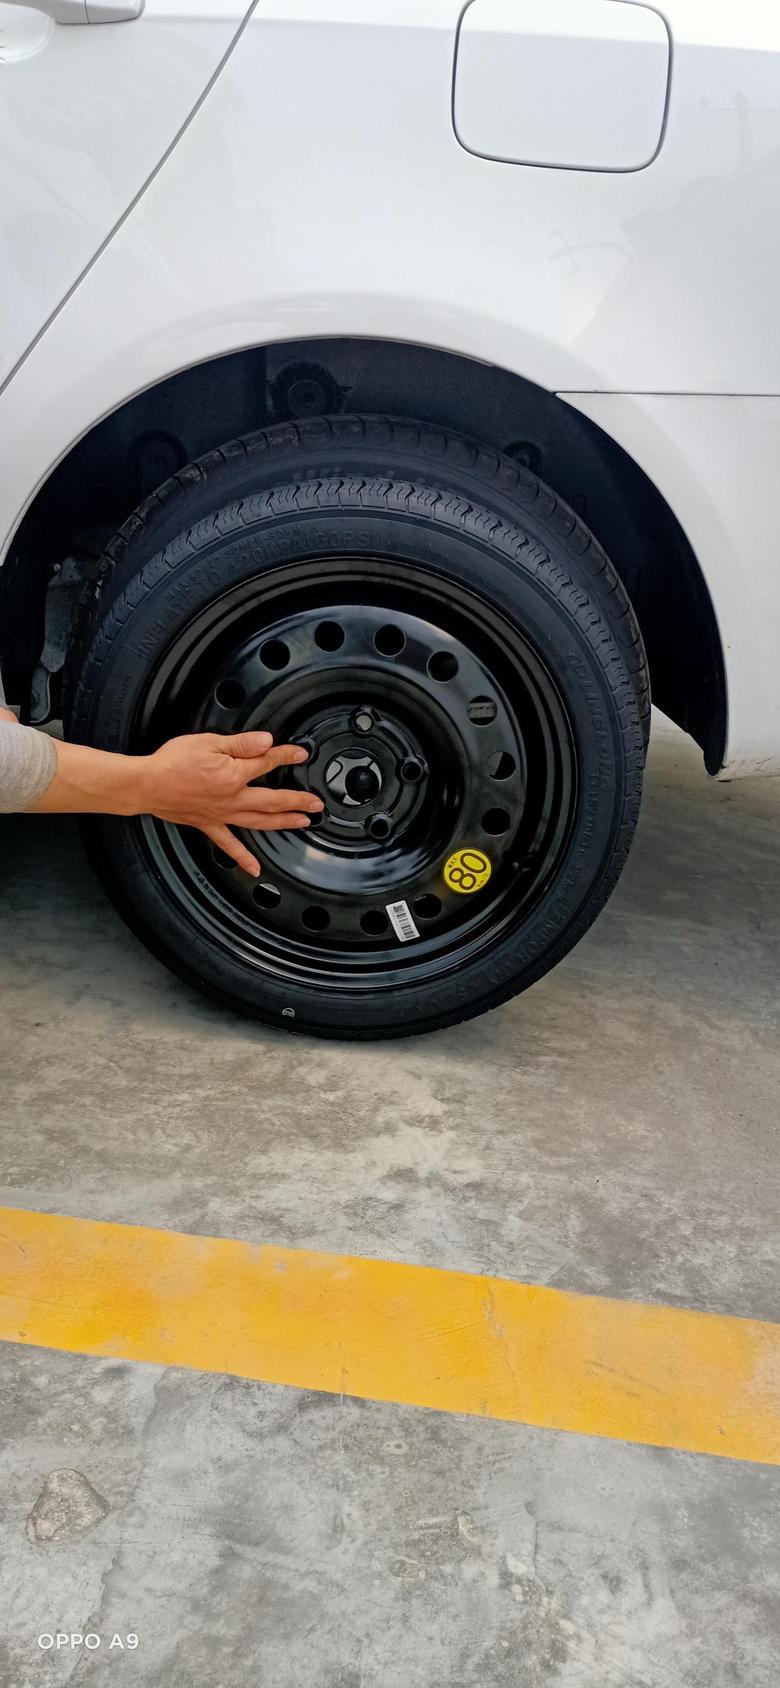 帝豪 各位老铁，备胎与原装车胎尺寸不一样，换上去行车安全吗？